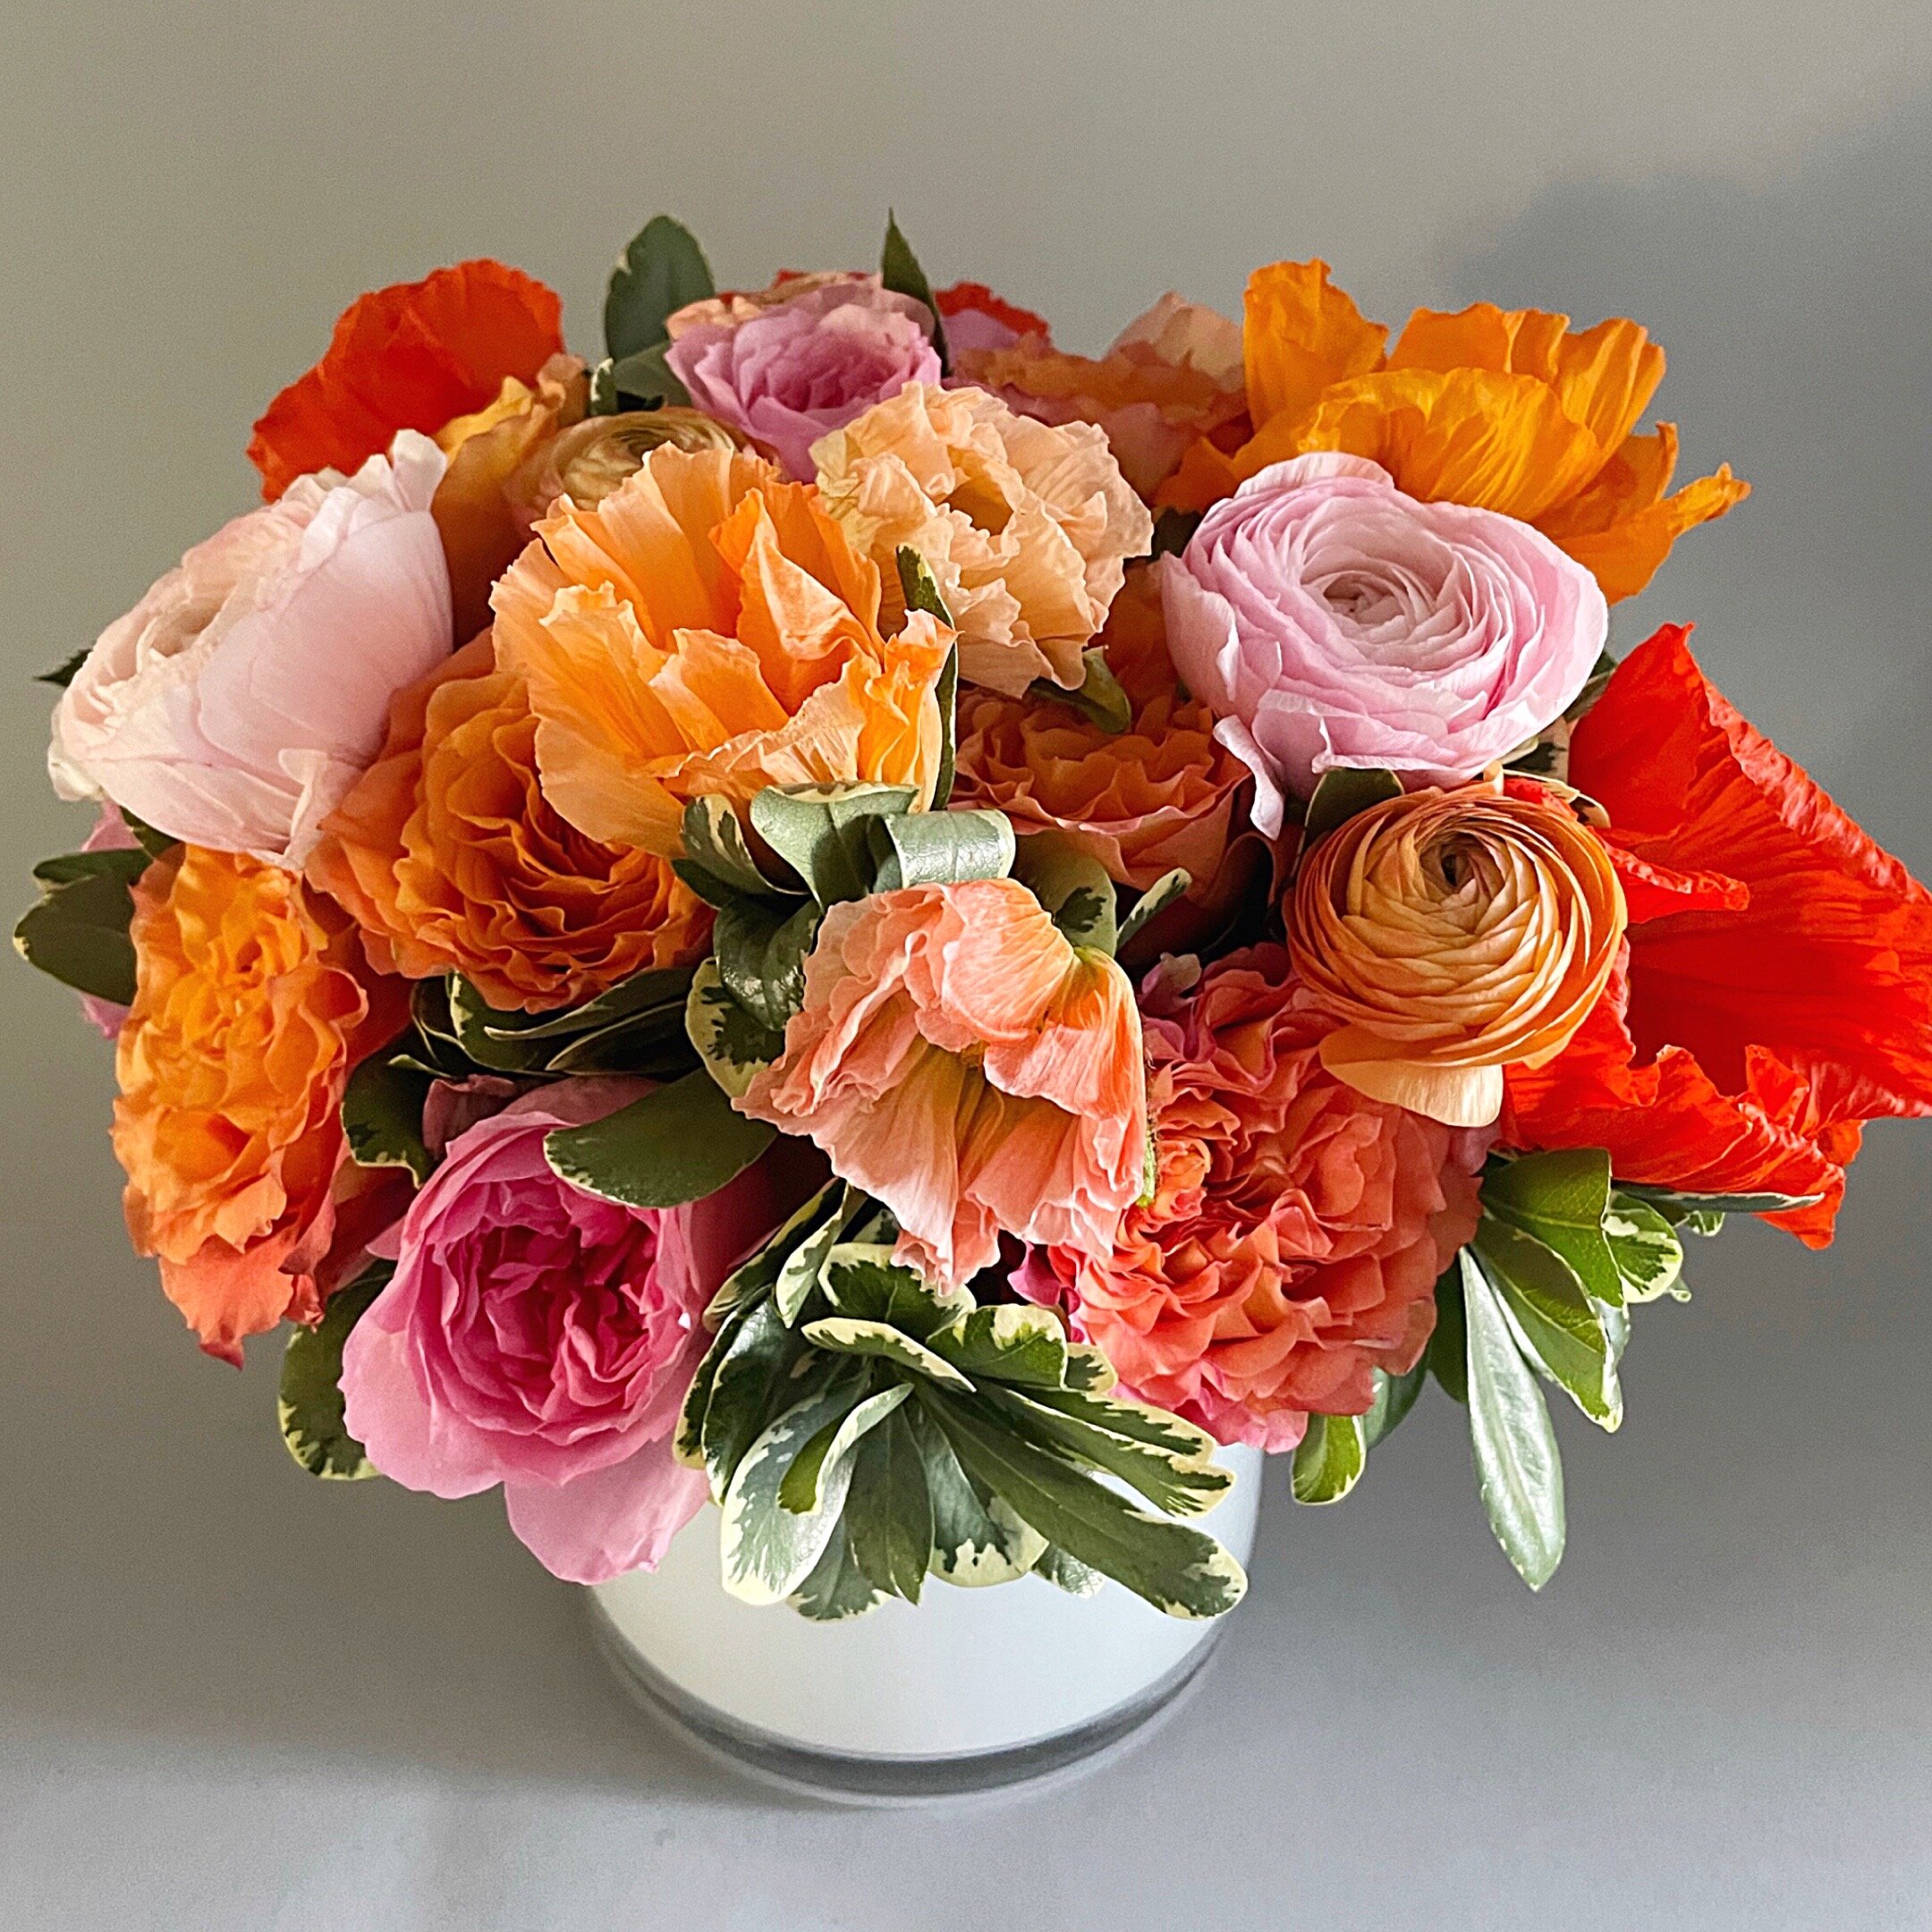 Outrageous Orange Bouquet - Atelier Ashley